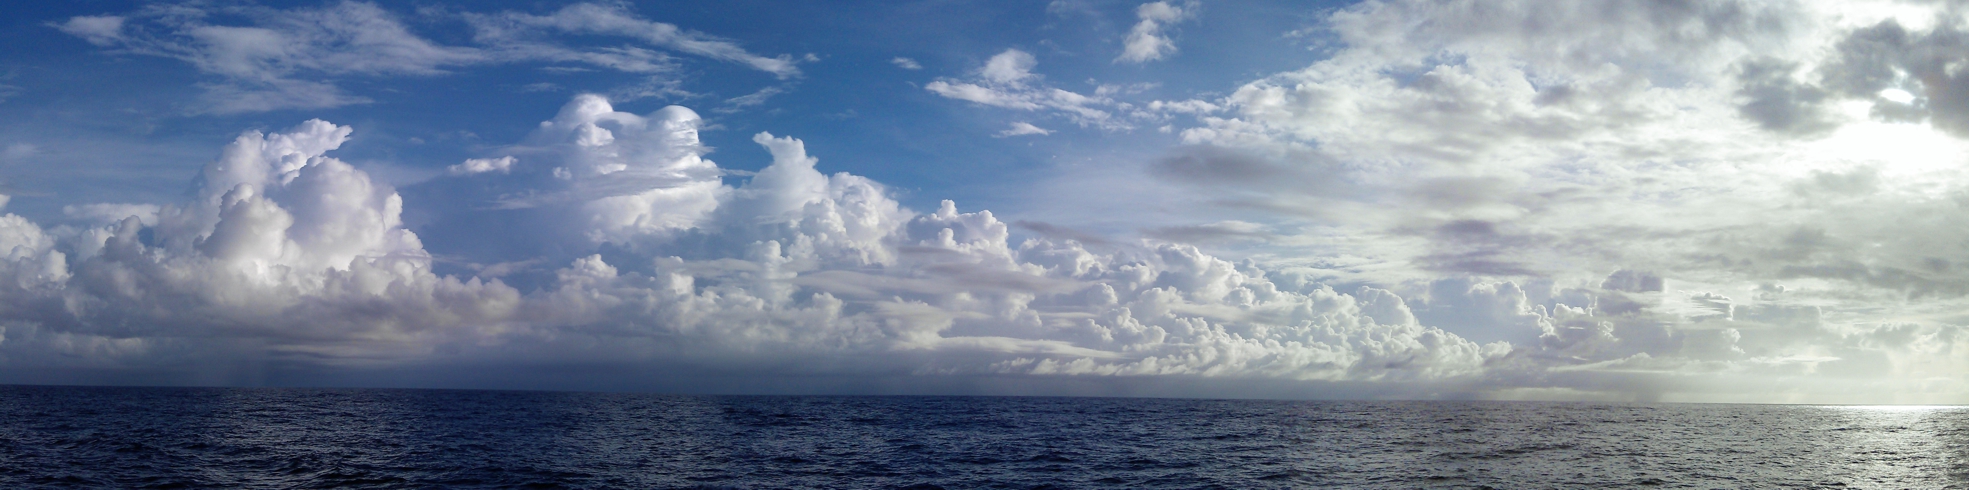 2012-10-17-cloud-panorama